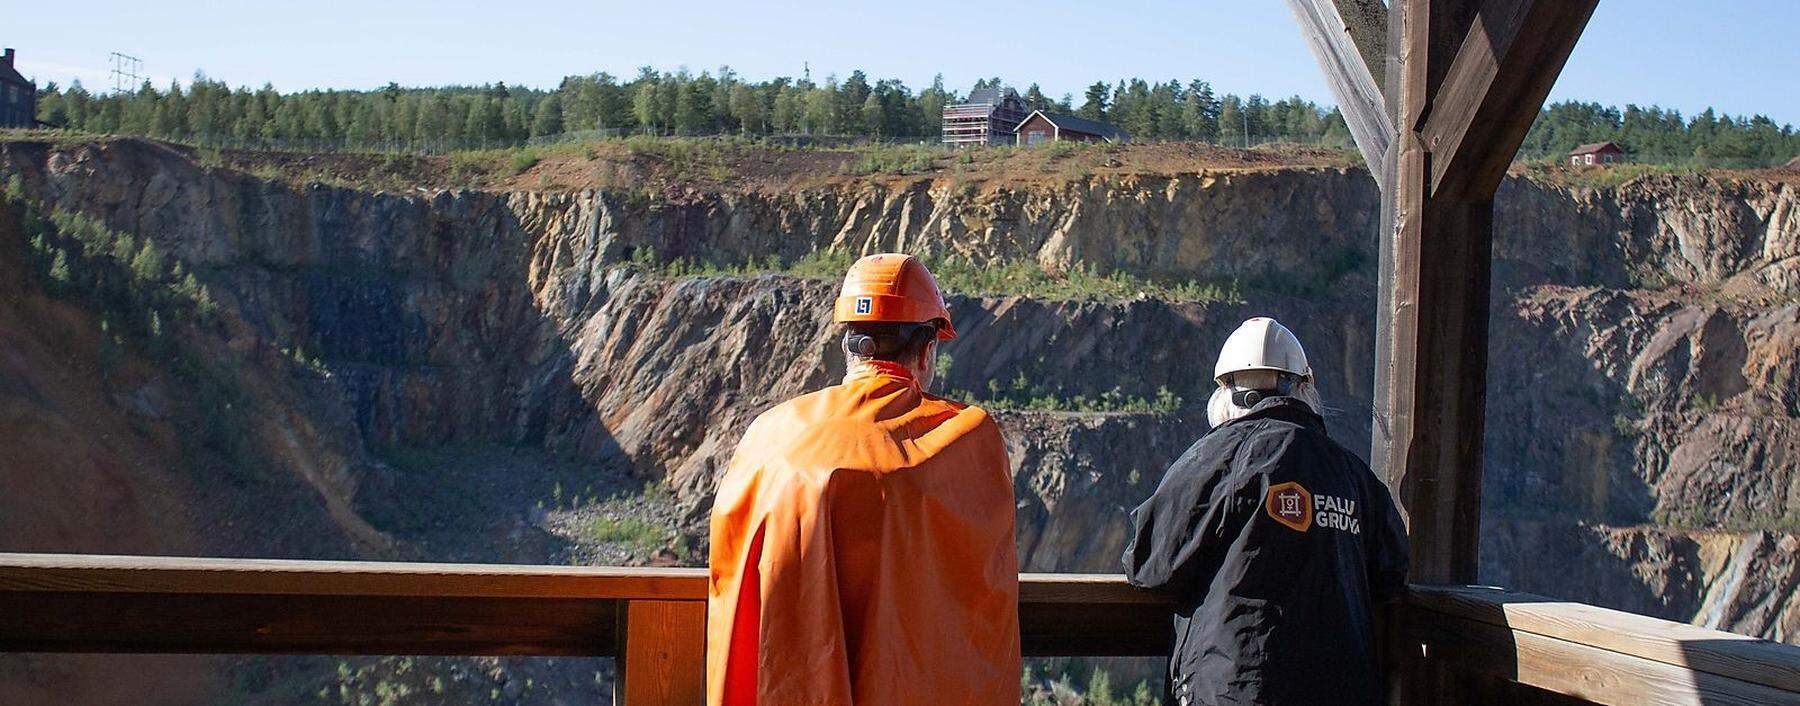 Der Blick auf die Grube des Kupferbergwerks in Falun - gleich danach geht es unter die Erde.